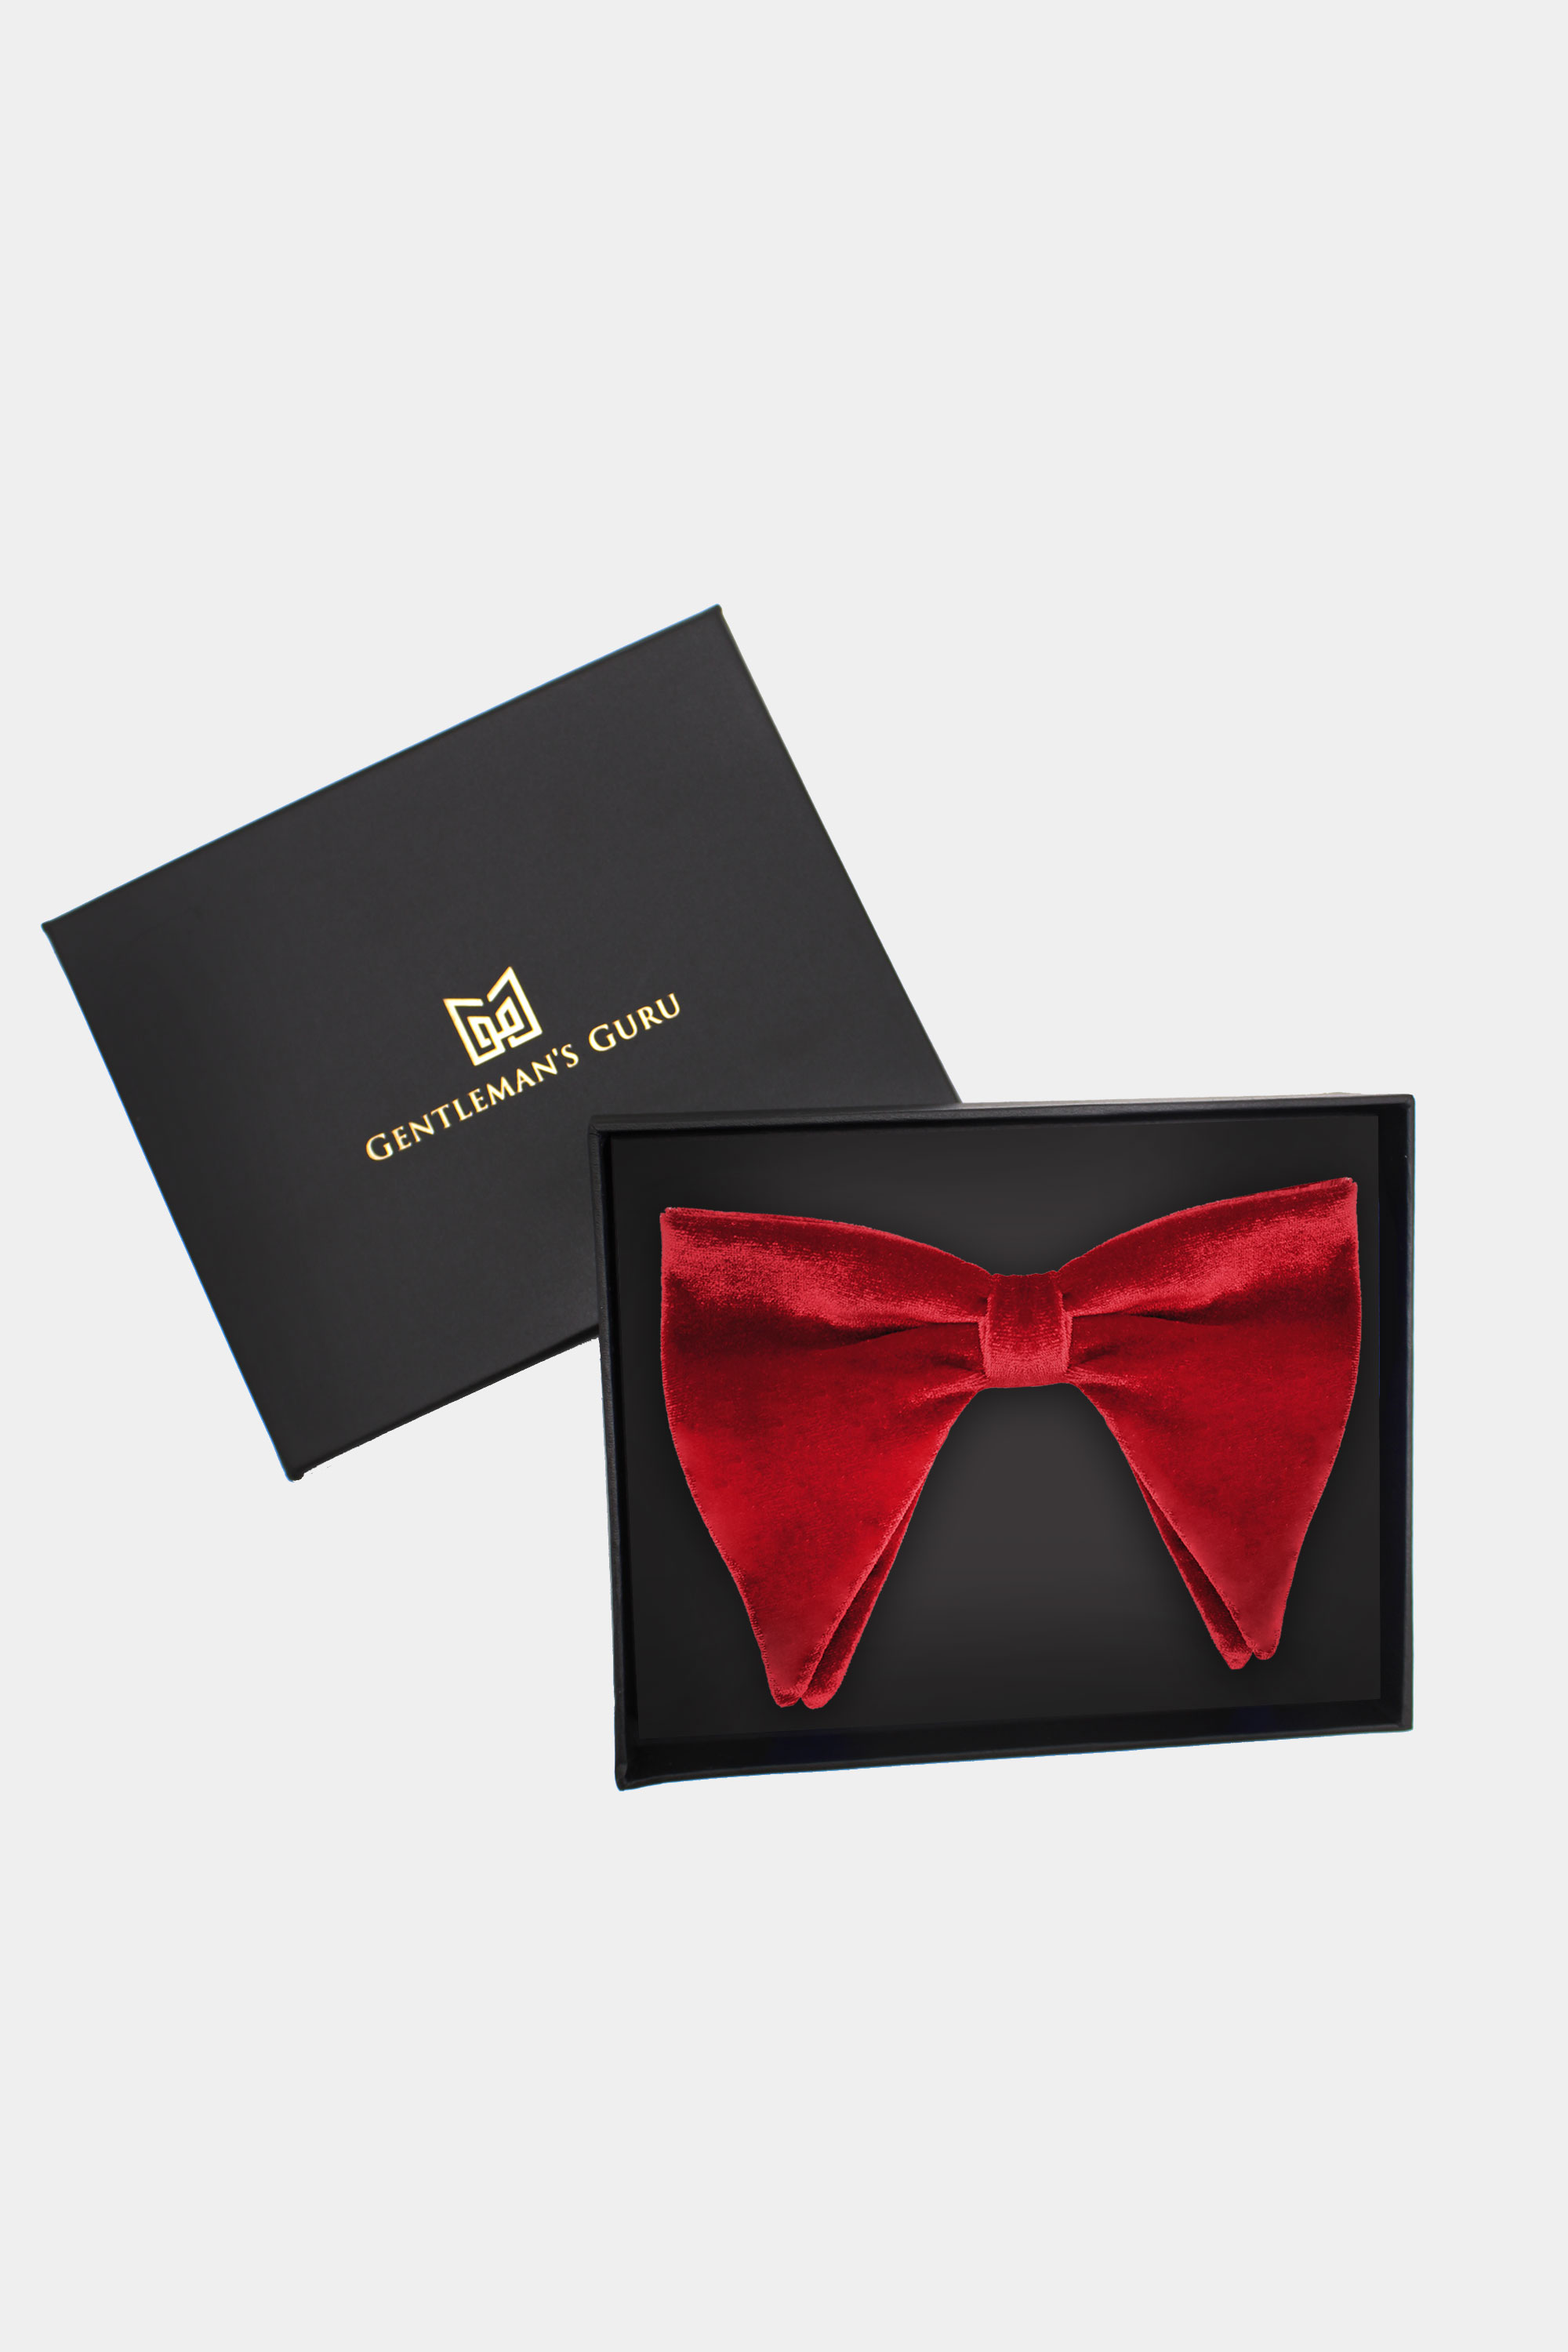 Red-Tuxedo-Bow-Tie-from-Gentlemansguru.com